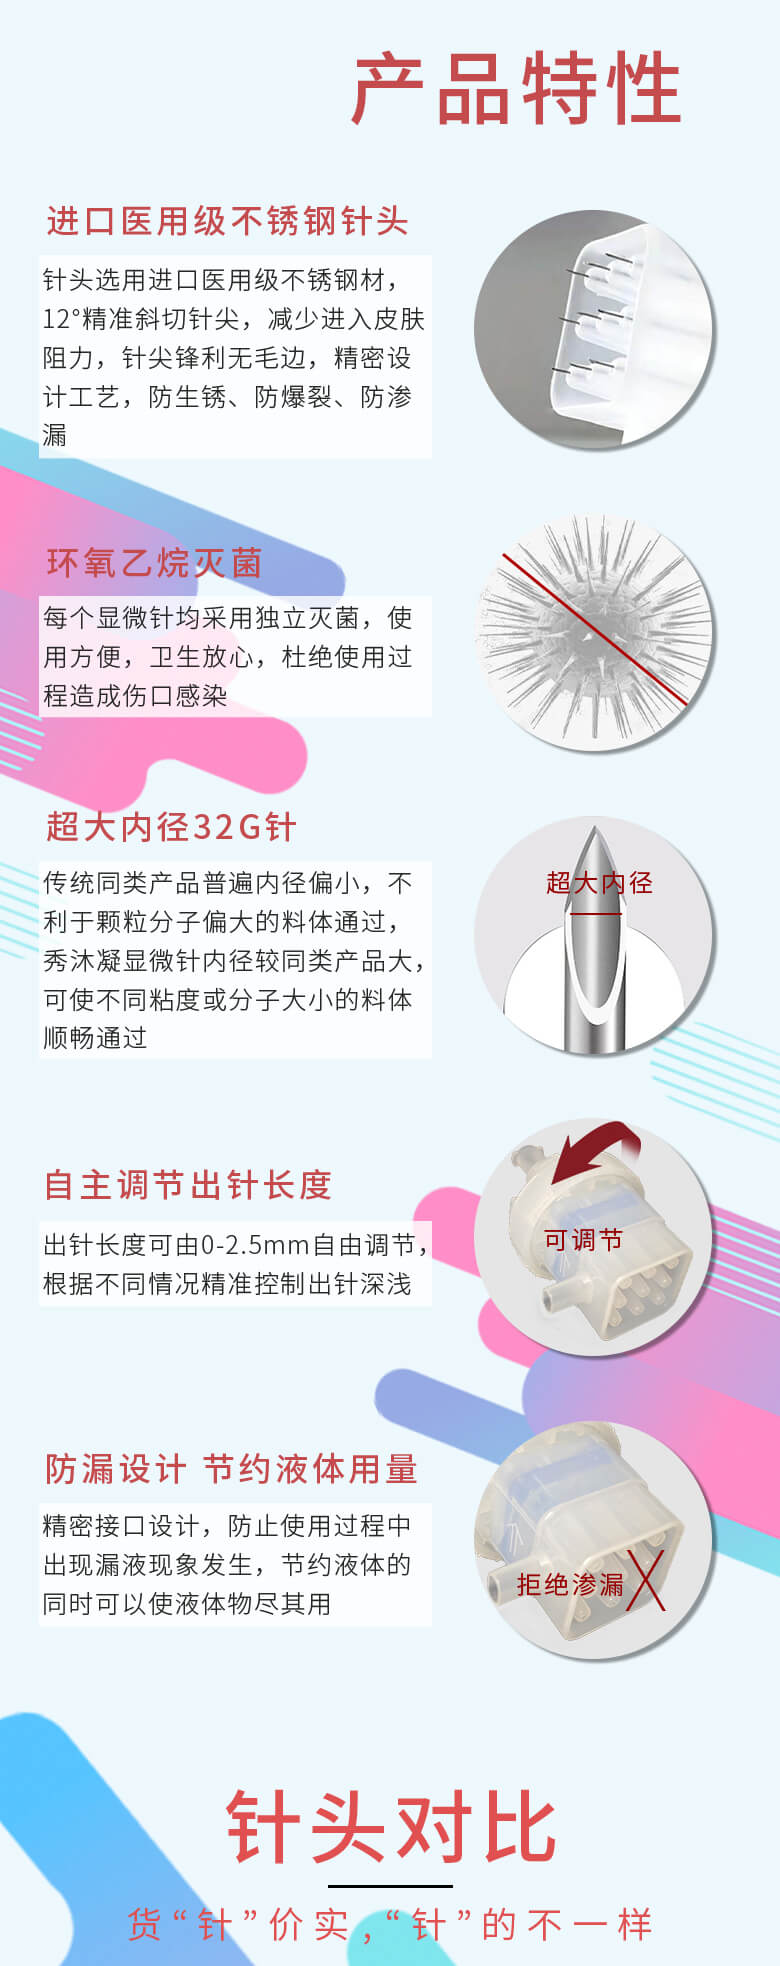 Therapeel Xiu Mu Ning برغي إبرة صغيرة متعددة الإبرة: -2